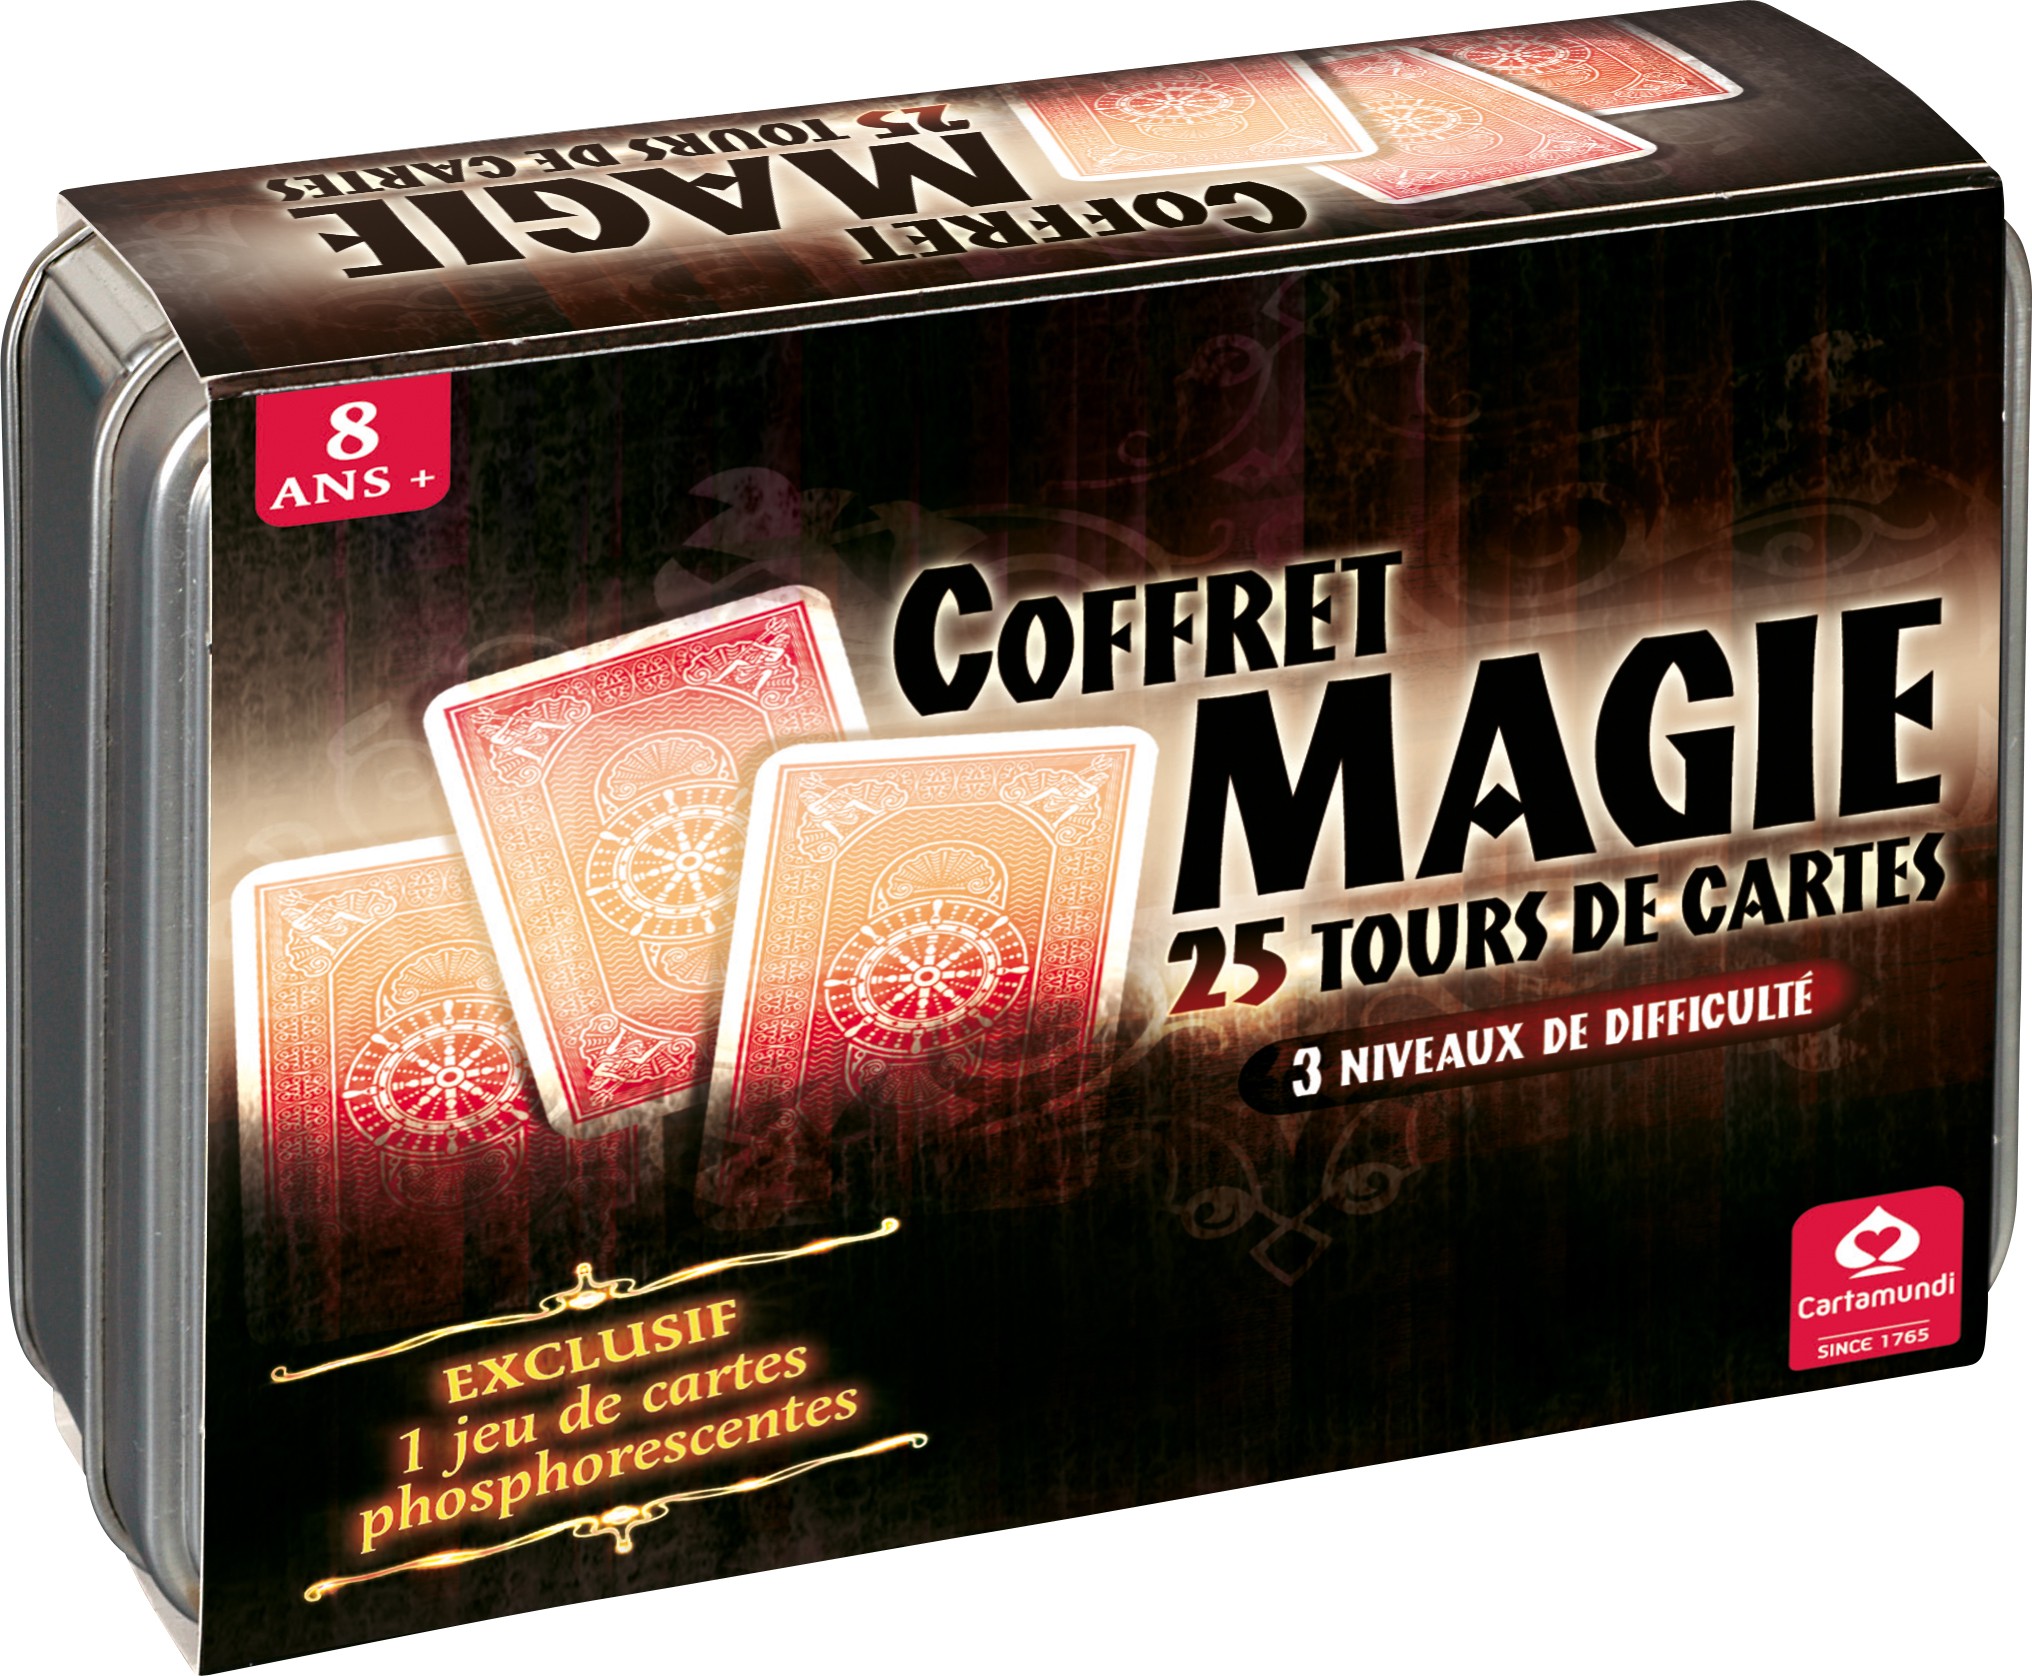 Coffret magie 25 tours de cartes - Fete à paris